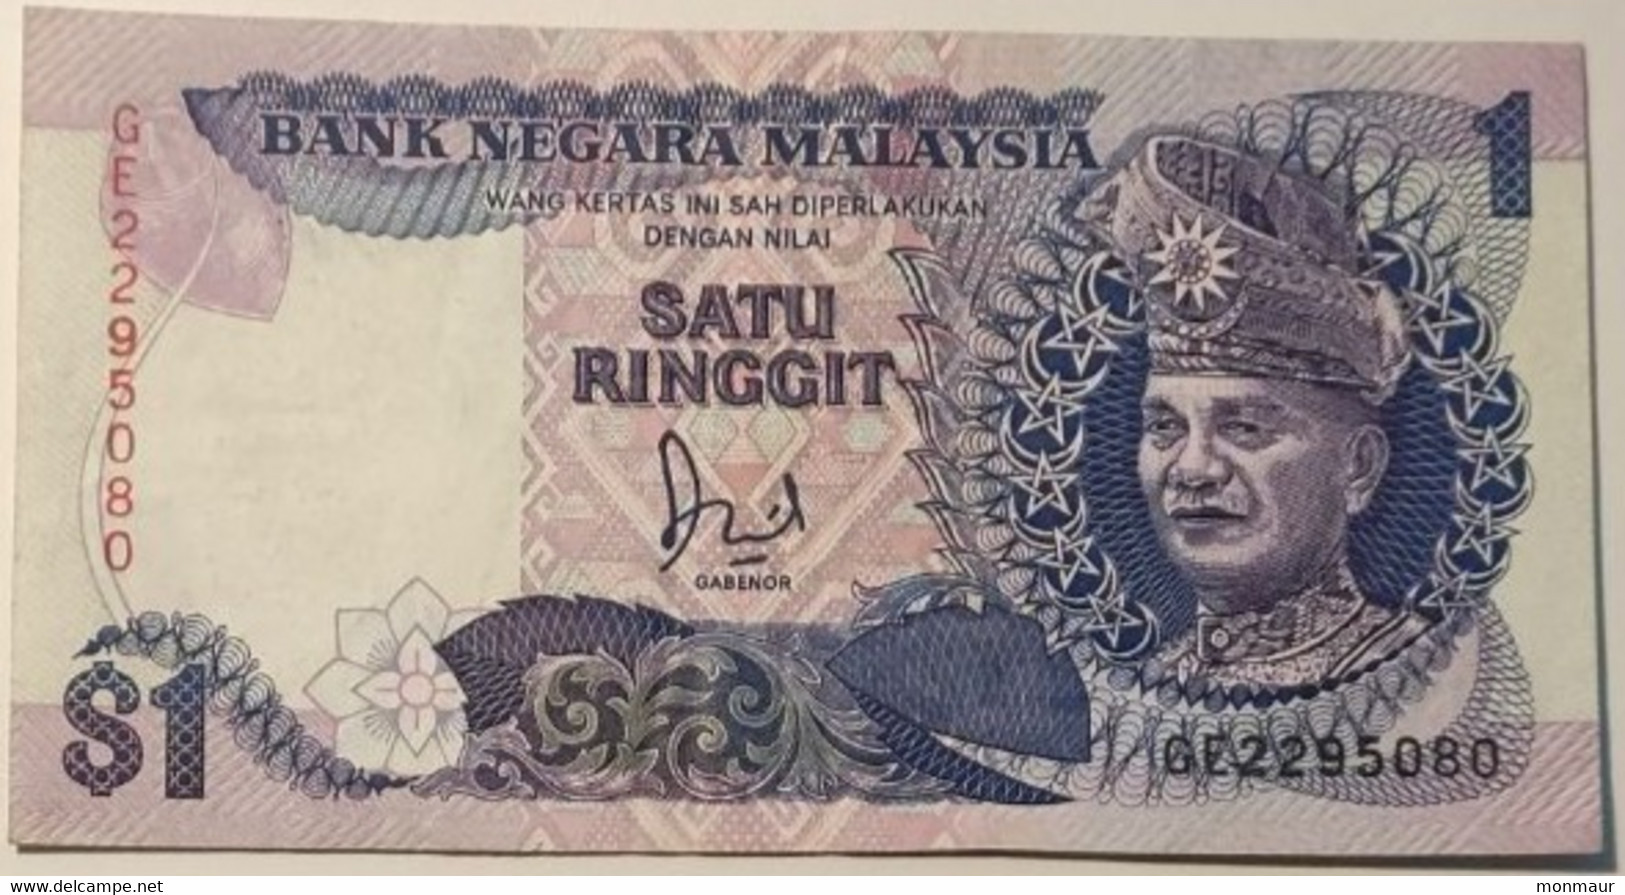 MALESIA 1989  1 RINGGIT - Malaysia